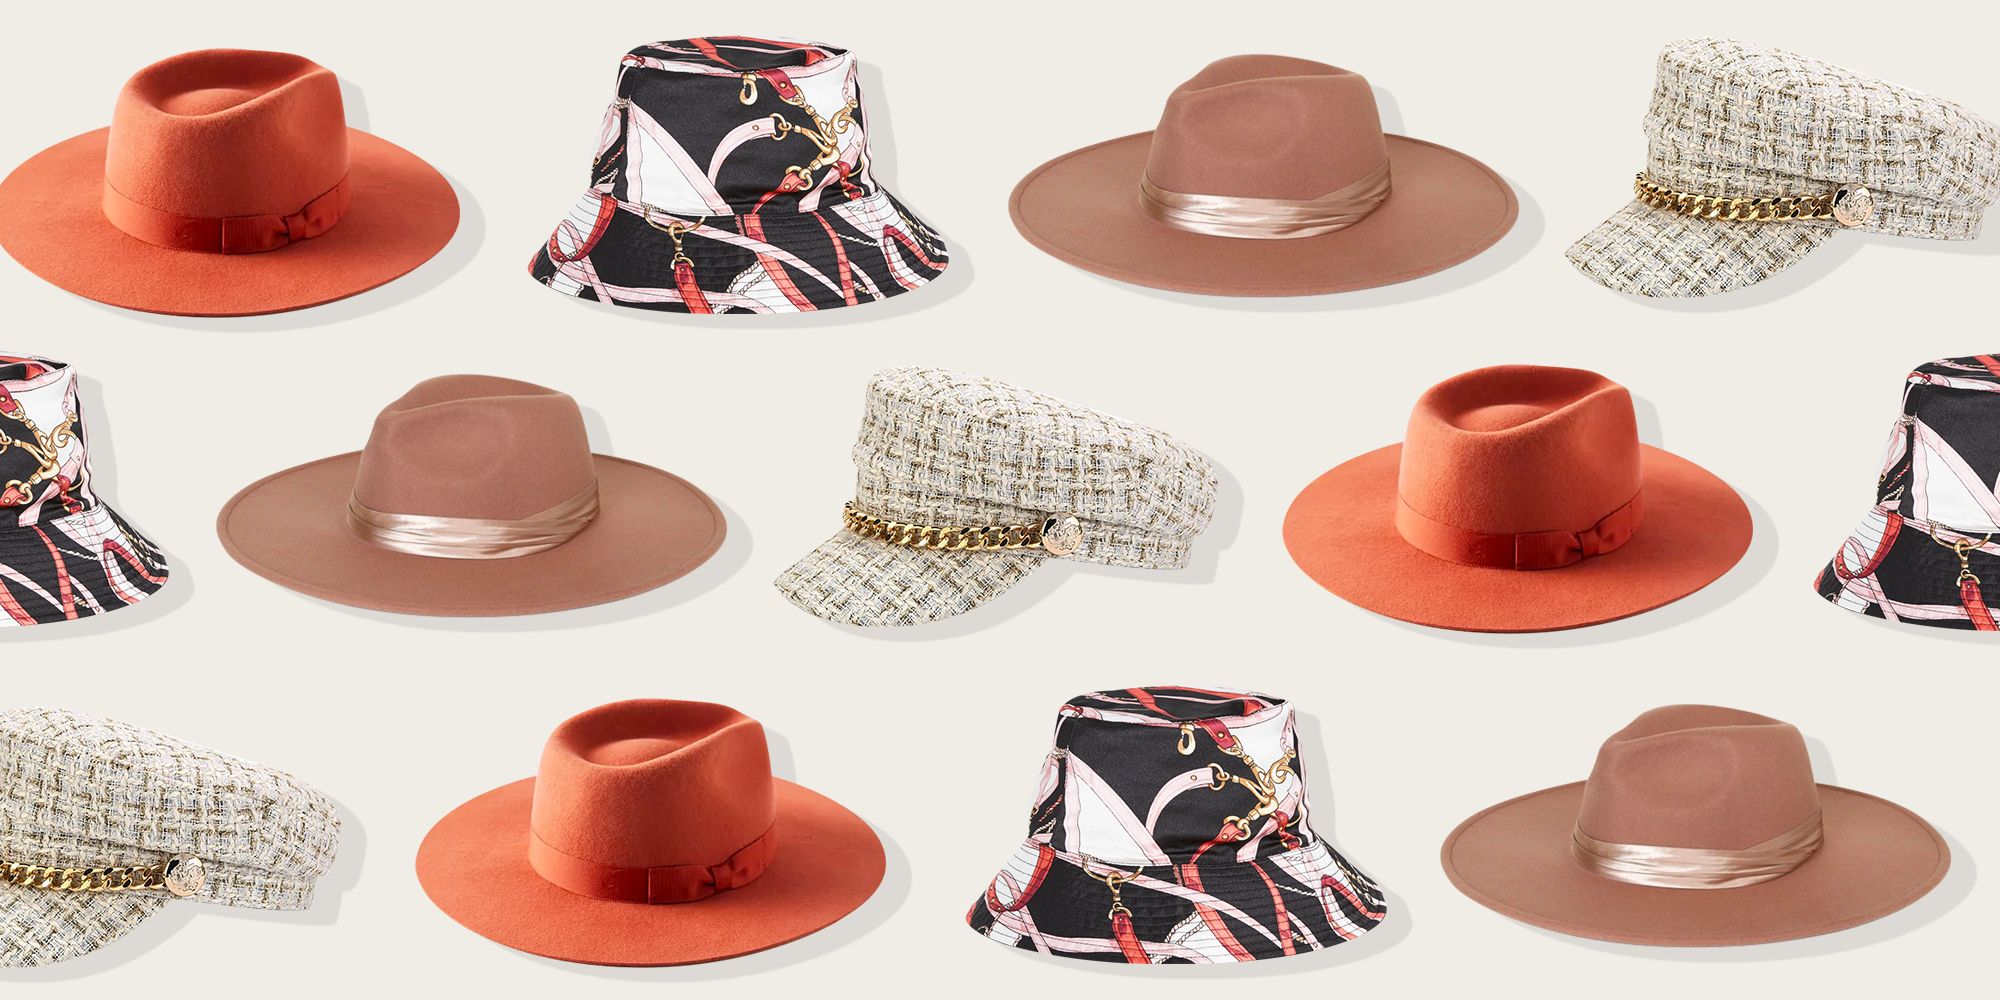 15 Best Fall Hats for Women 2021 - Cute ...